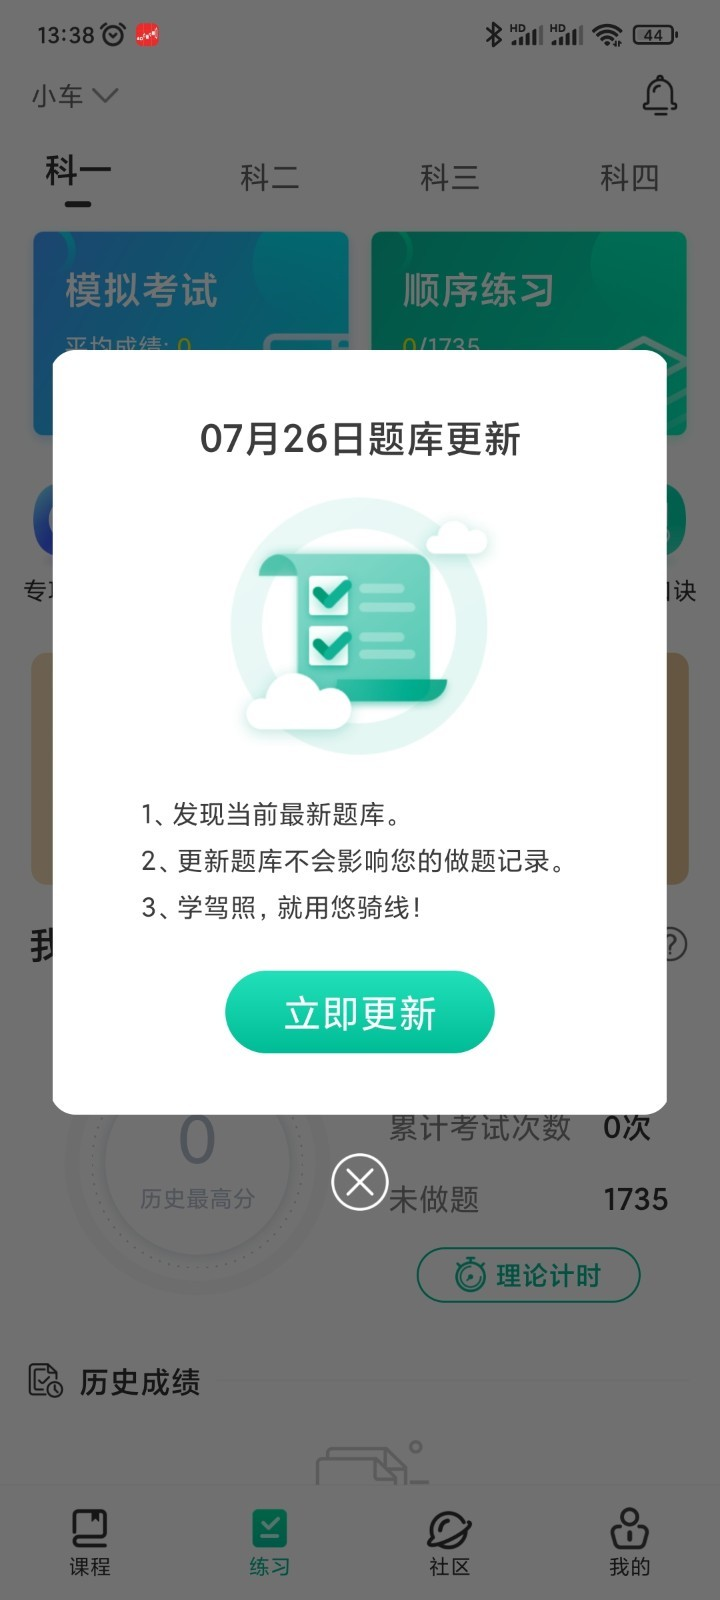 悠骑线app官方下载图片1